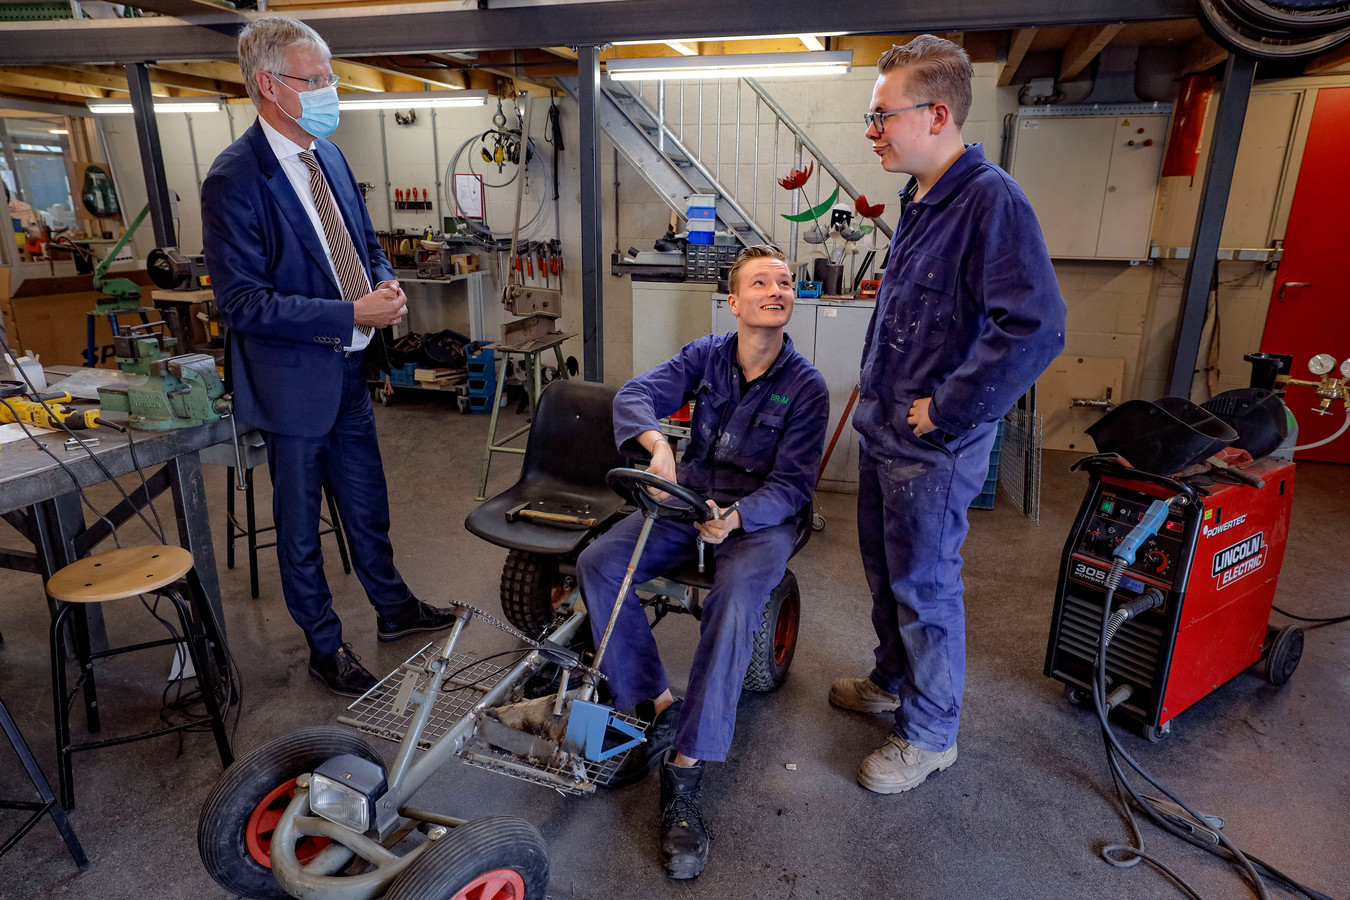 Onderwijsminister Slob bezoekt praktijkschool De Rijzert. Bram Leusink (links) en Dylano van Gent hopen hun gemotoriseerde skelter aan de praat te krijgen.